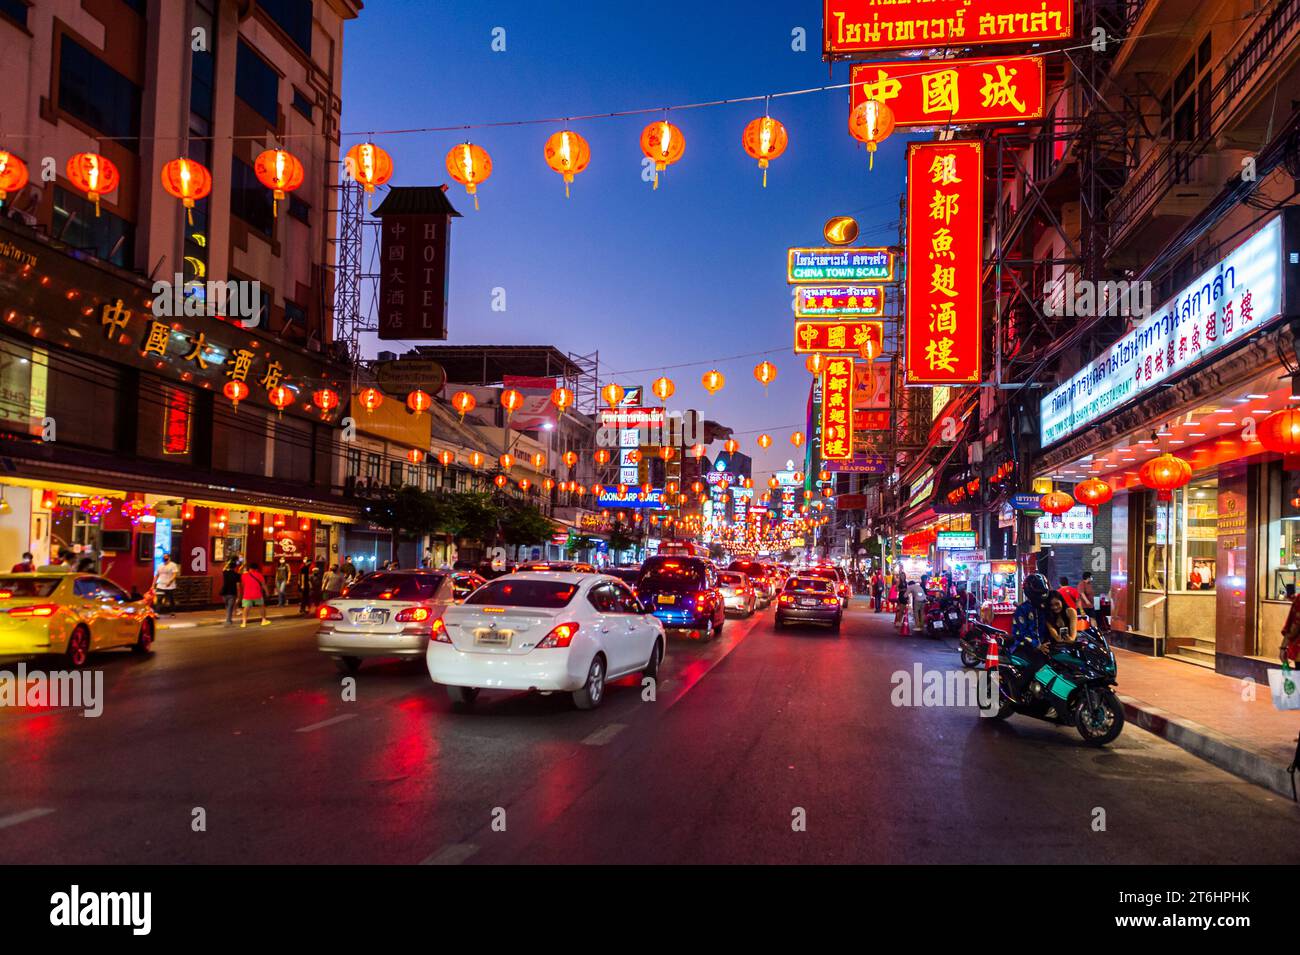 Thailandia, Bangkok, Chinatown al periodo del capodanno cinese Foto Stock